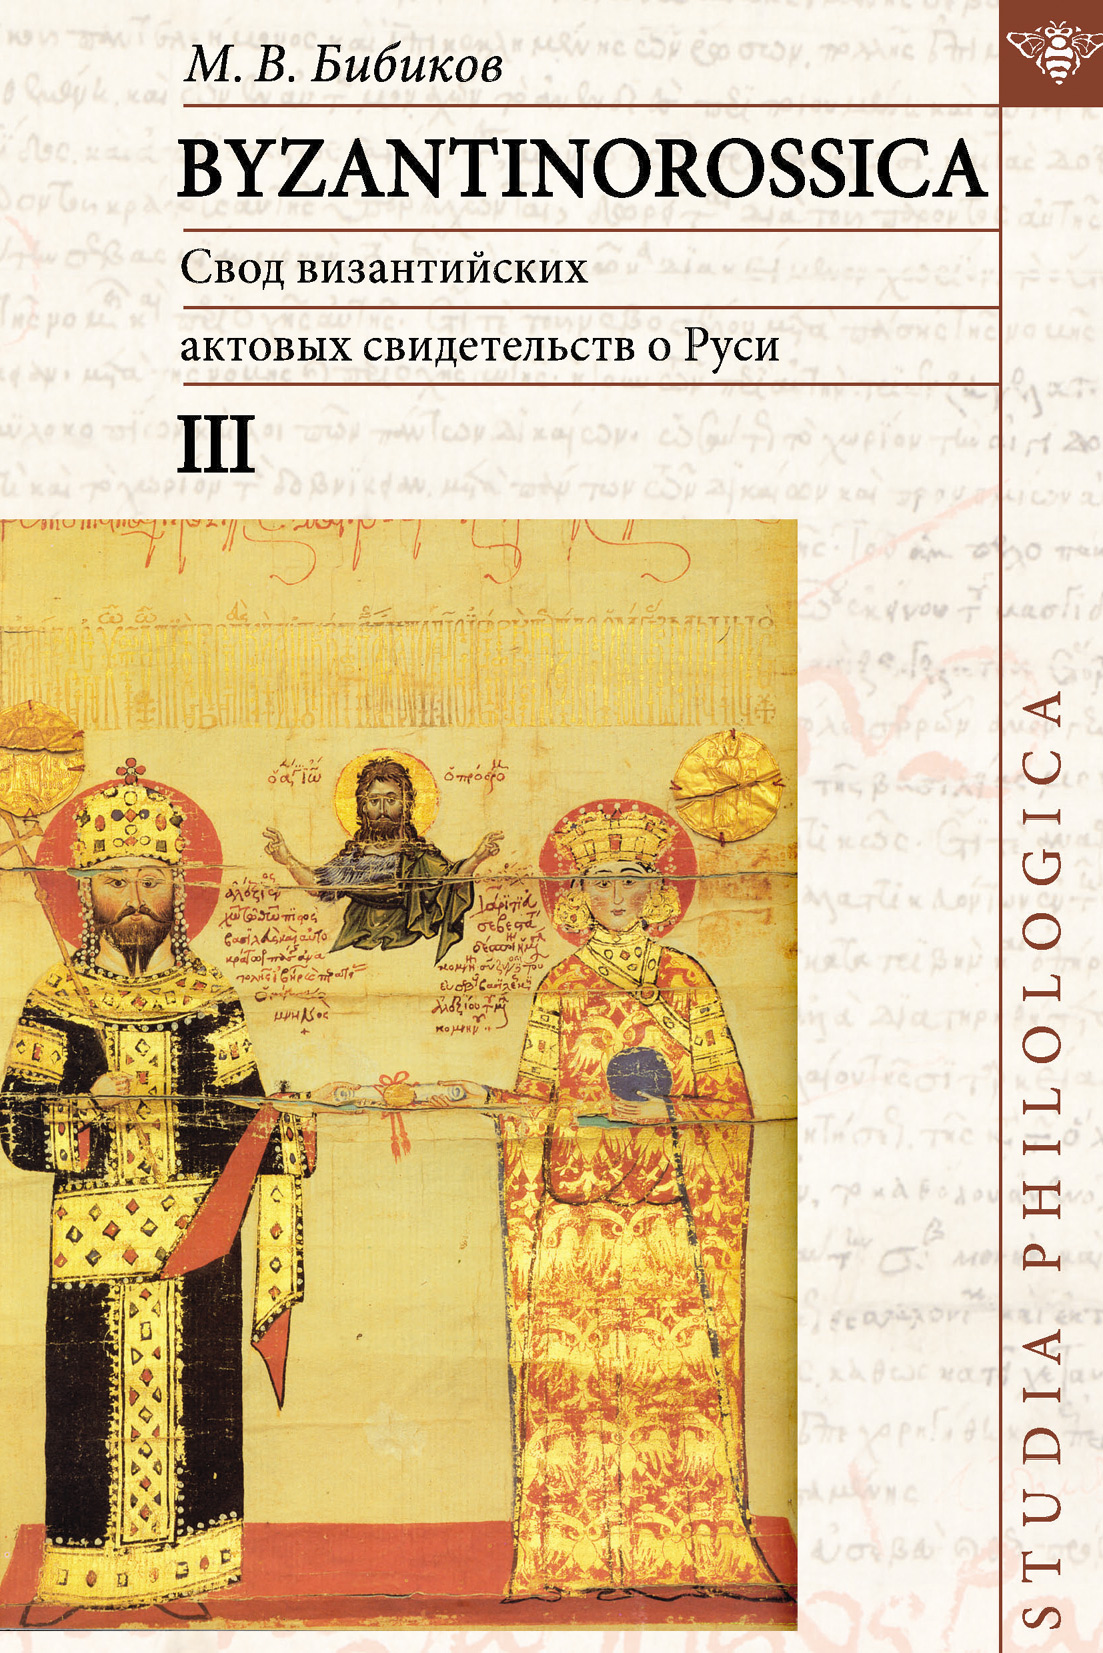 BYZANTINOROSSICA.Свод византийских актовых свидетельств о Руси. Том III